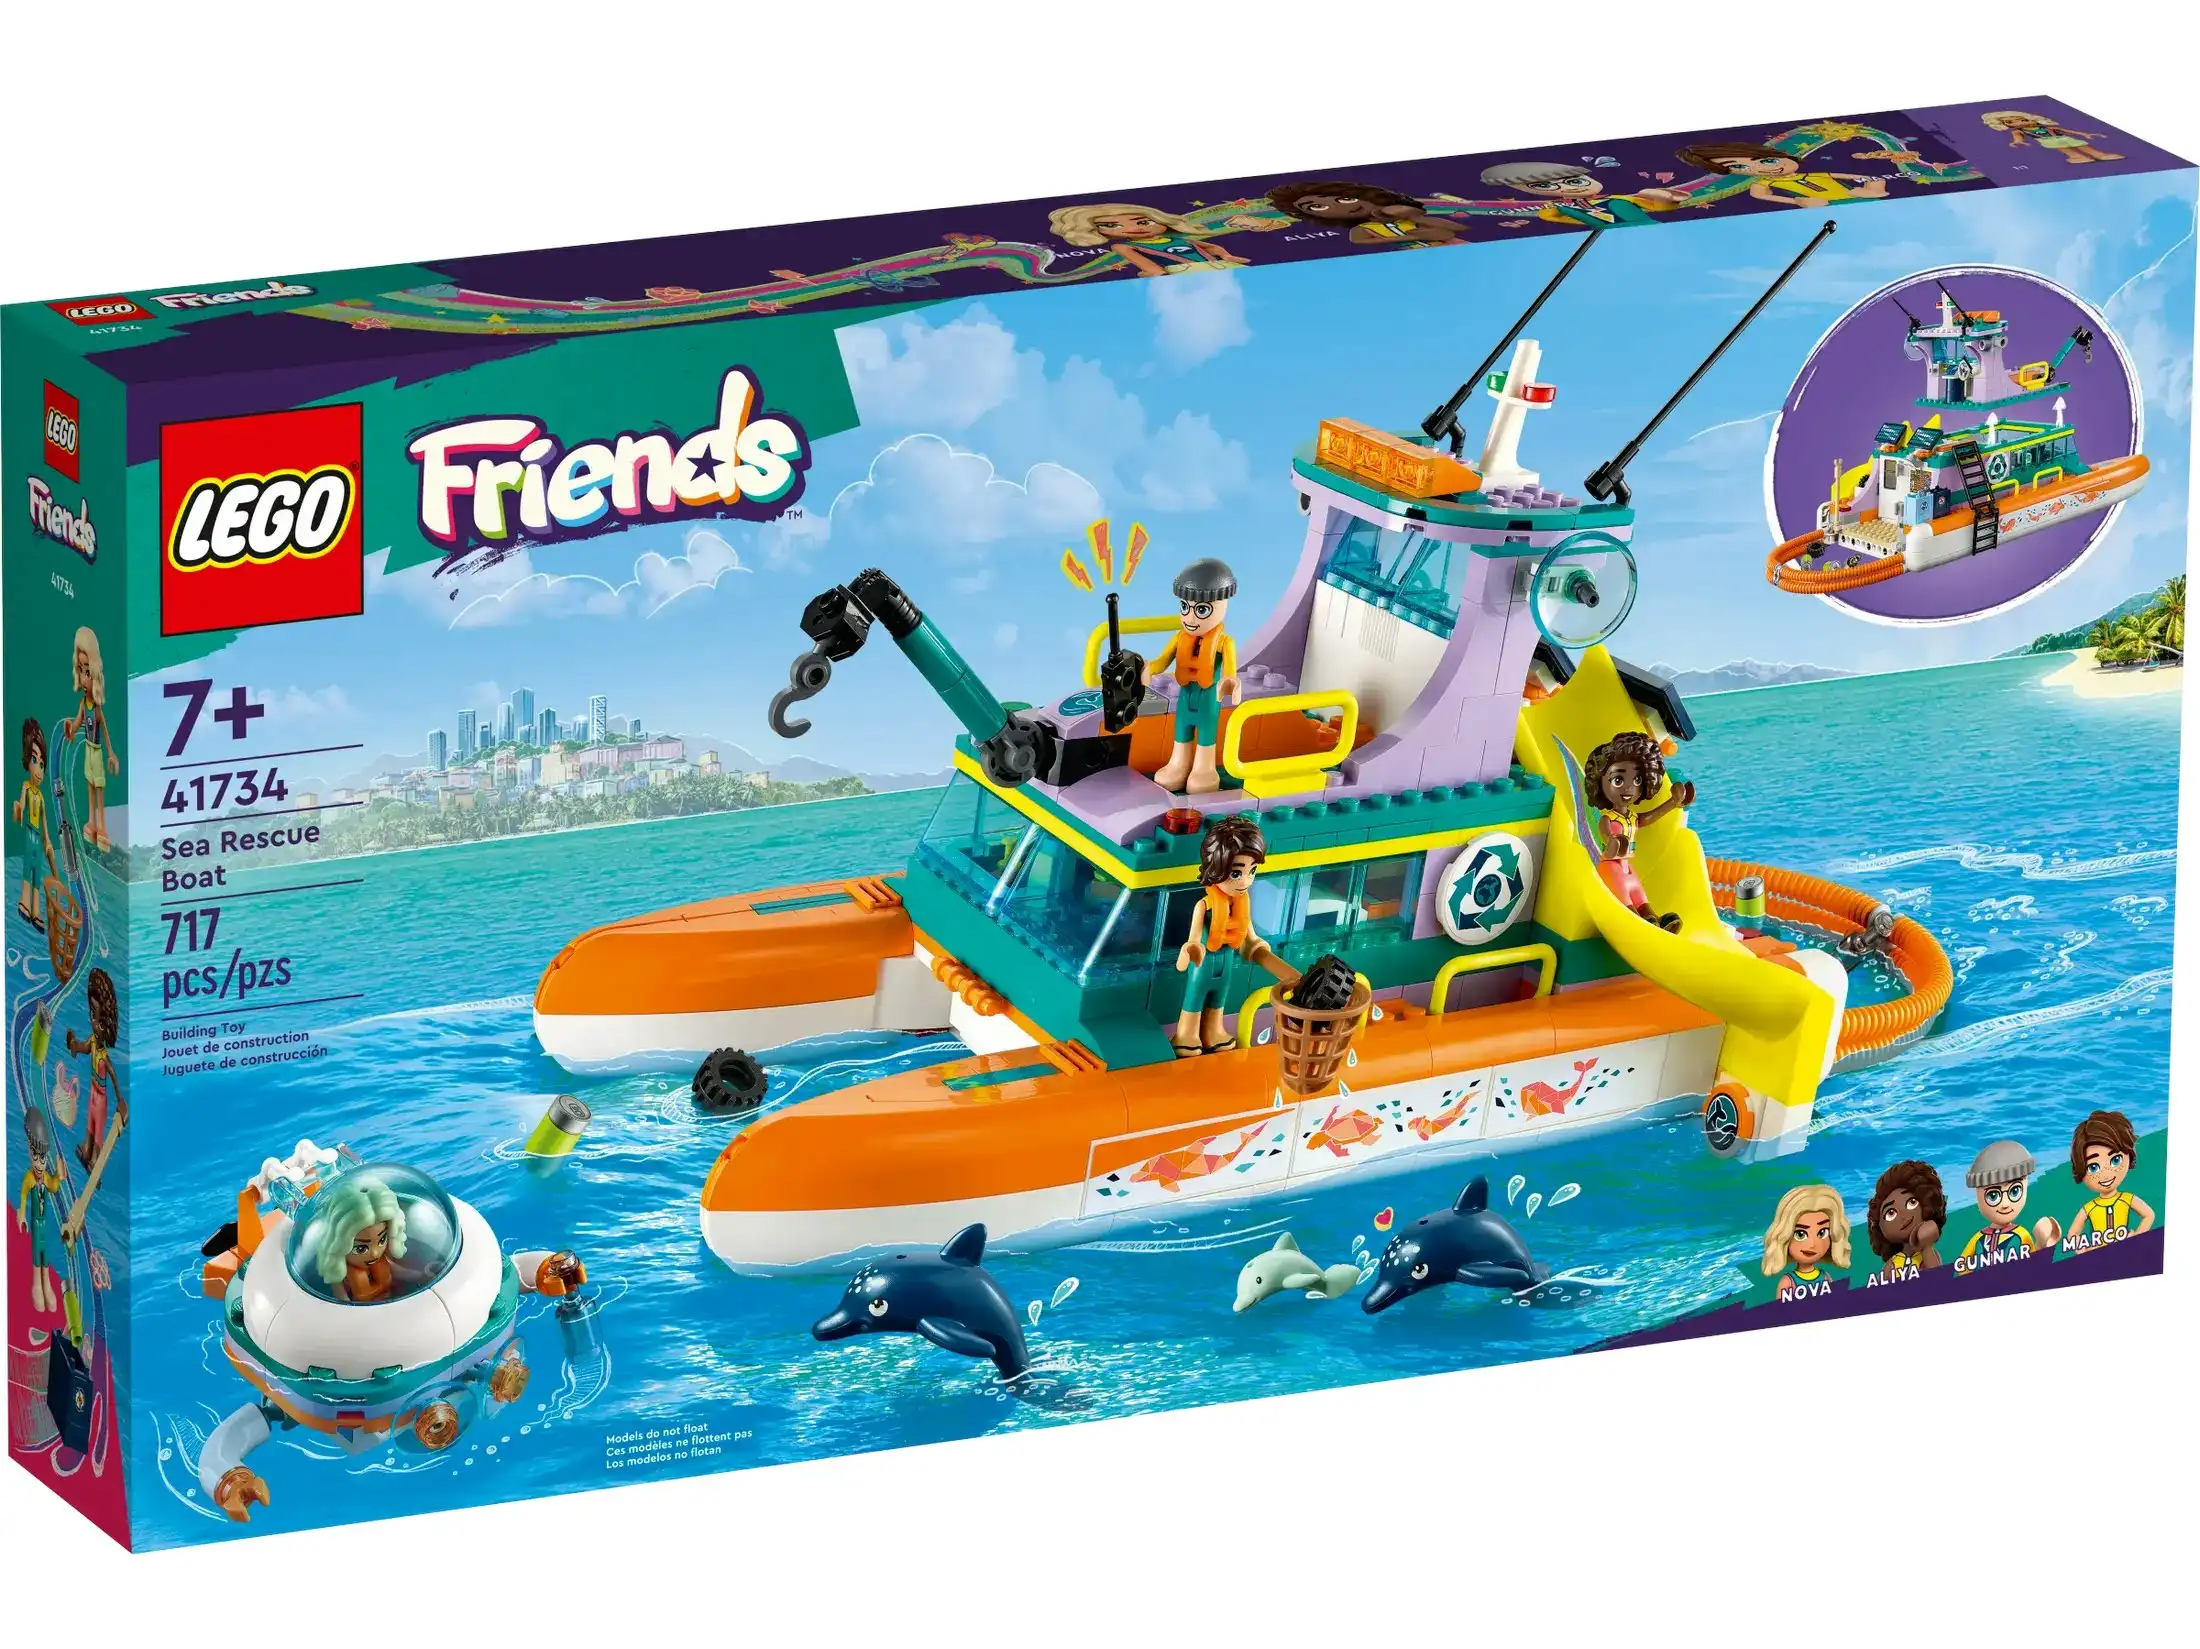 LEGO 41734 Sea Rescue Boat - Friends